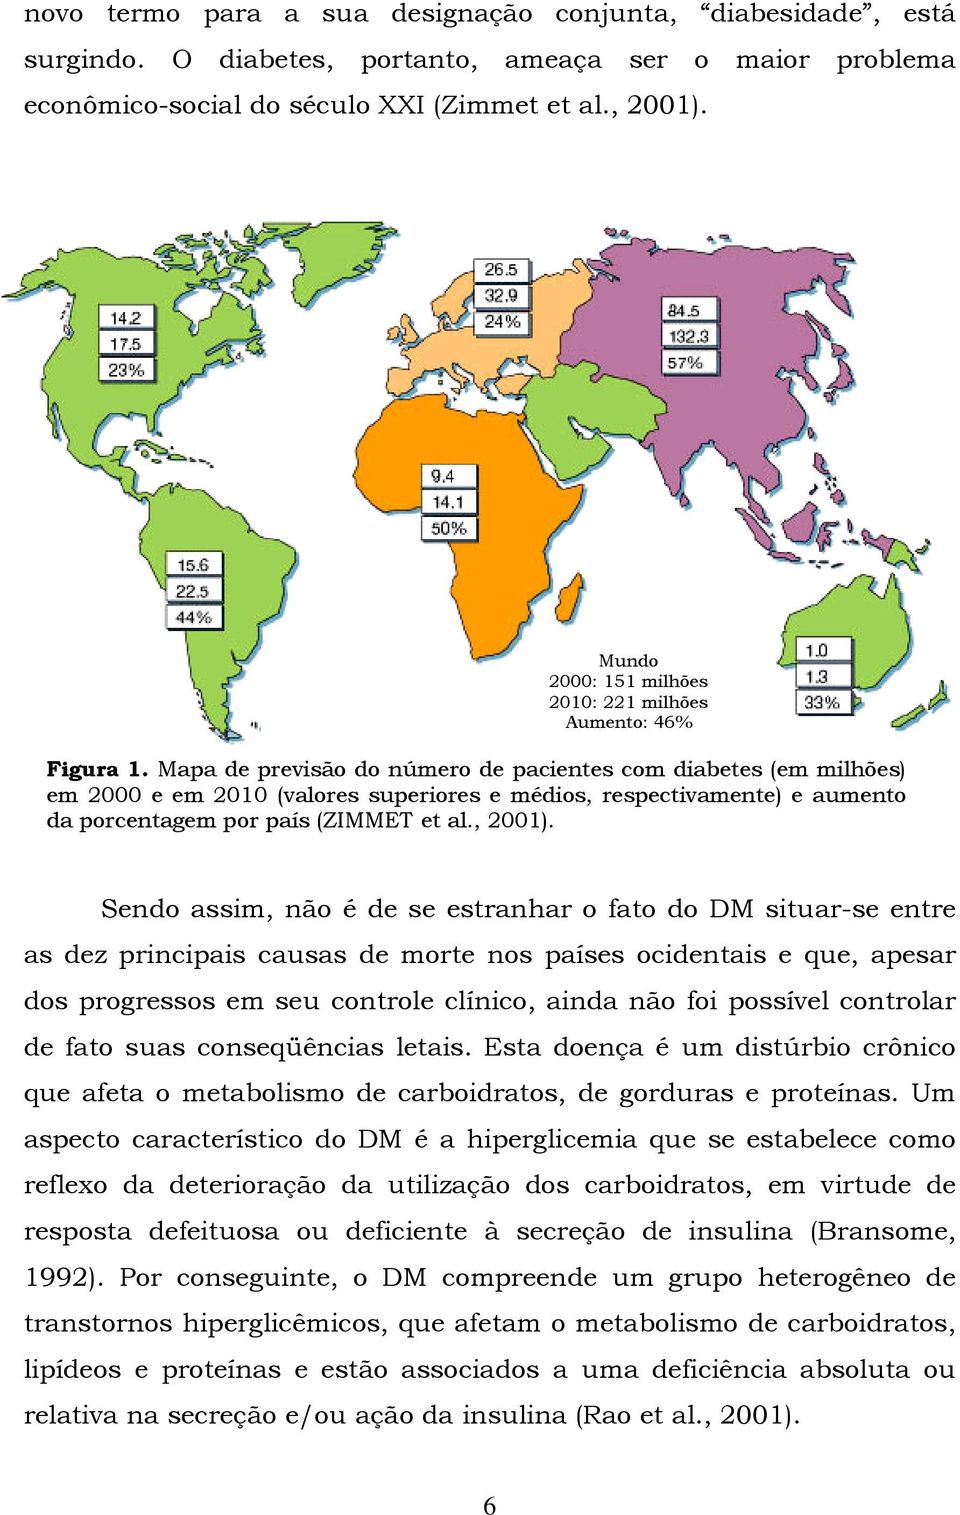 Mapa de previsão do número de pacientes com diabetes (em milhões) em 2000 e em 2010 (valores superiores e médios, respectivamente) e aumento da porcentagem por país (ZIMMET et al., 2001).